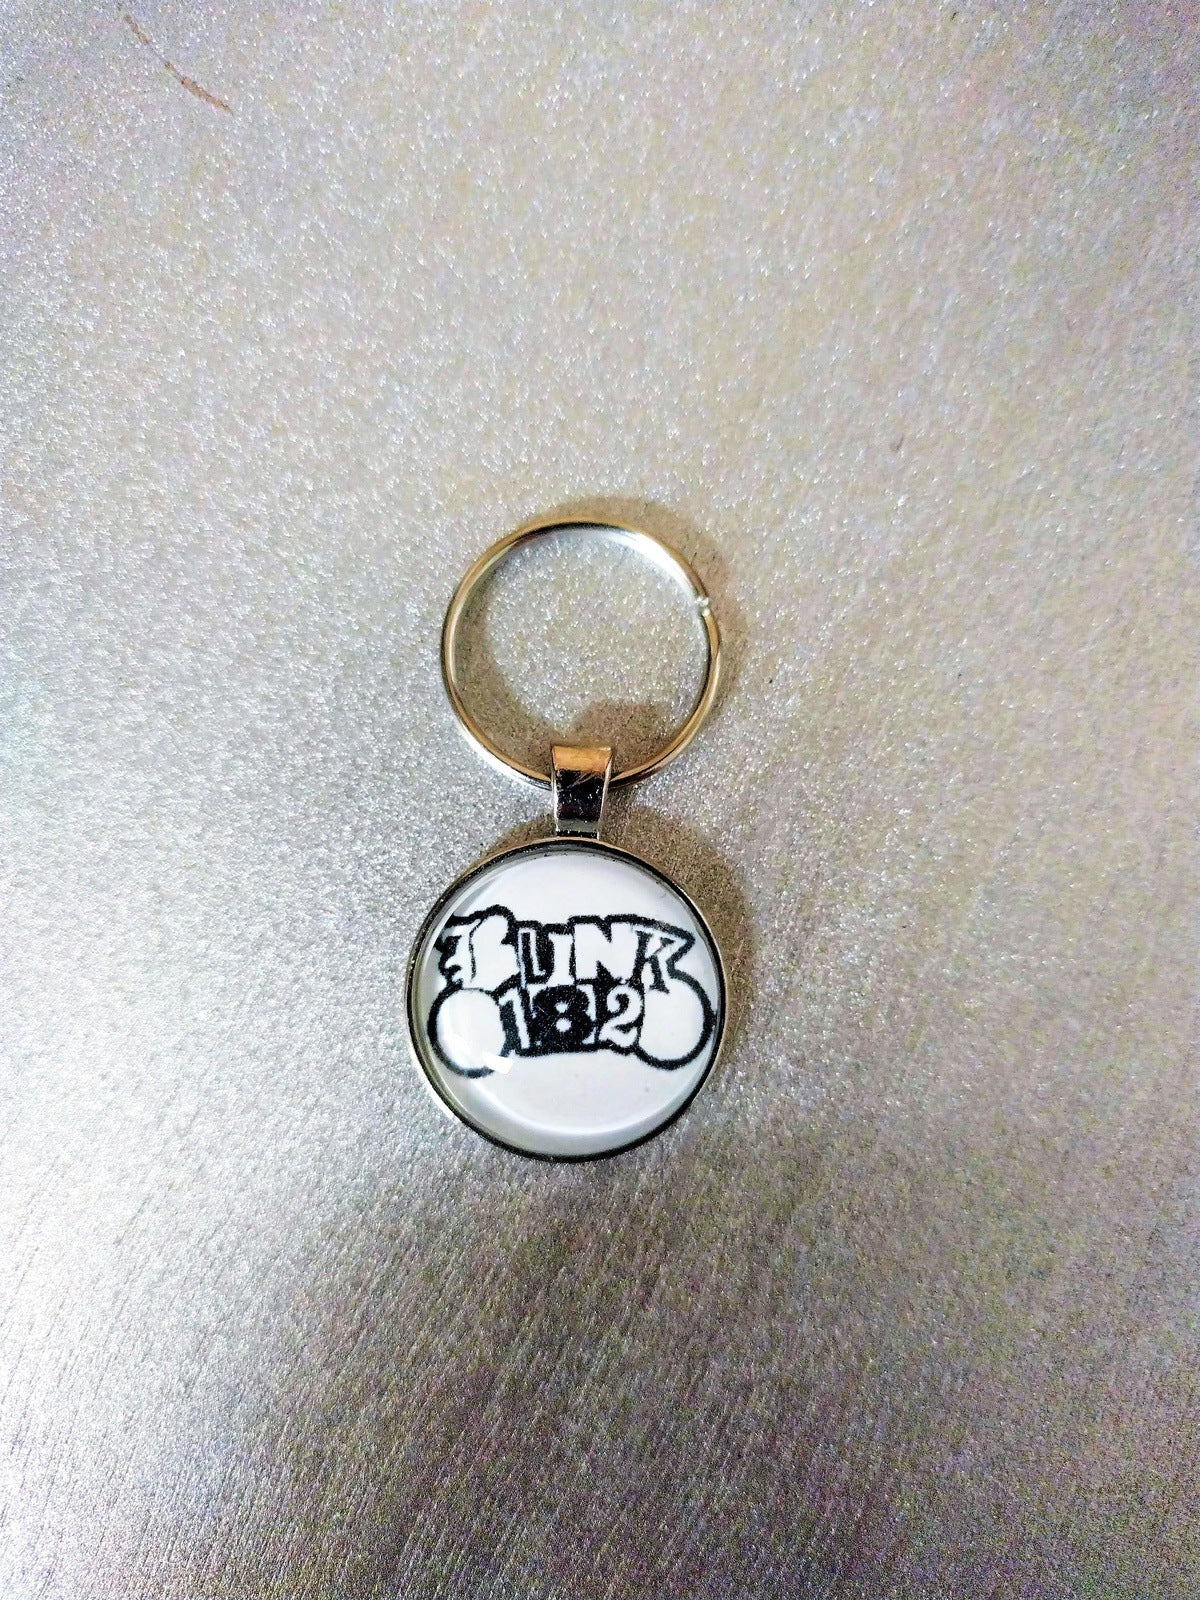 Blink 182 1 Inch Keychain